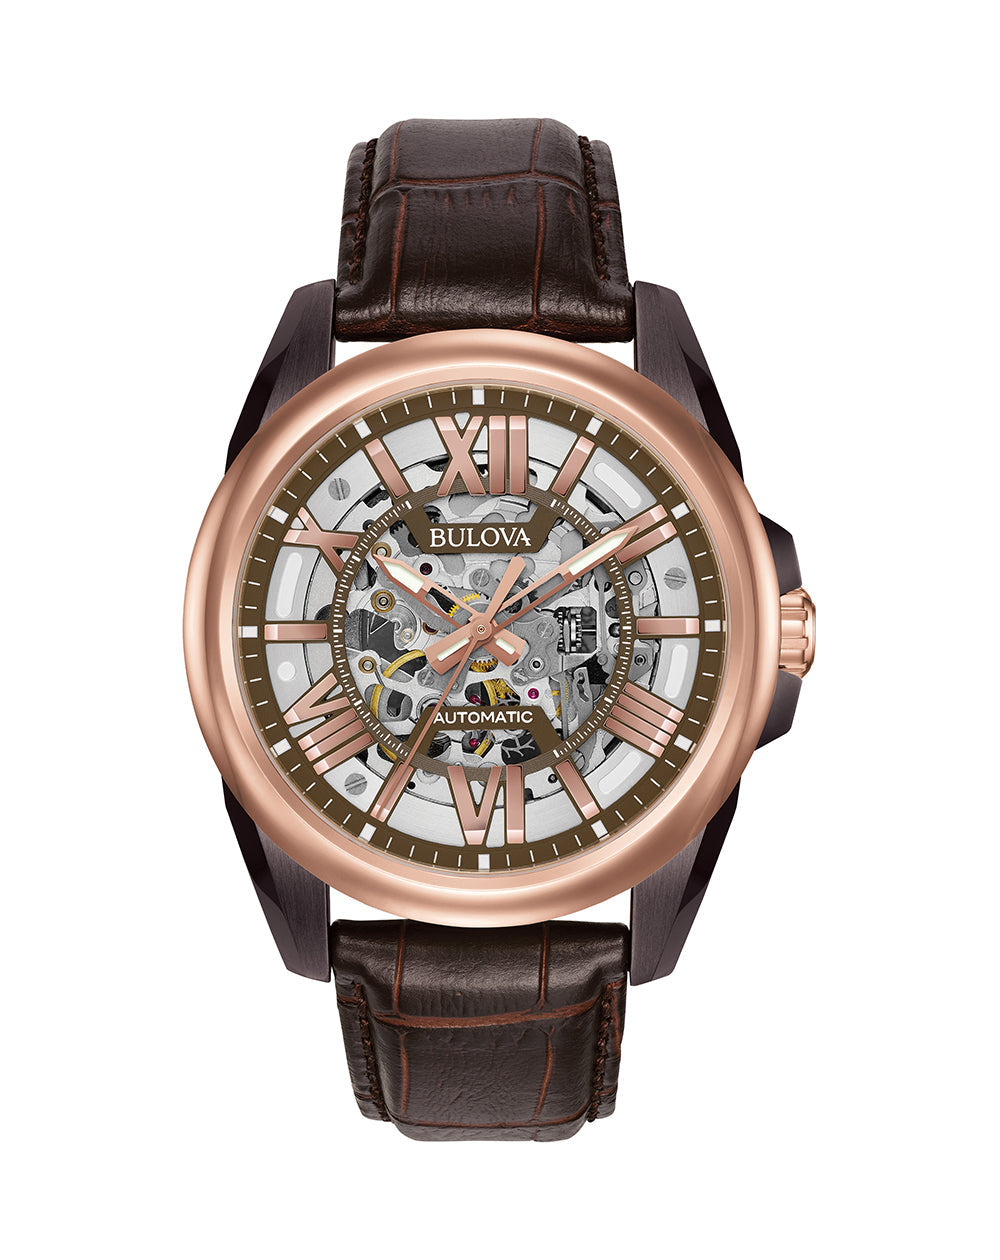 96A187 Bulova Men's Classic Automatic Watch